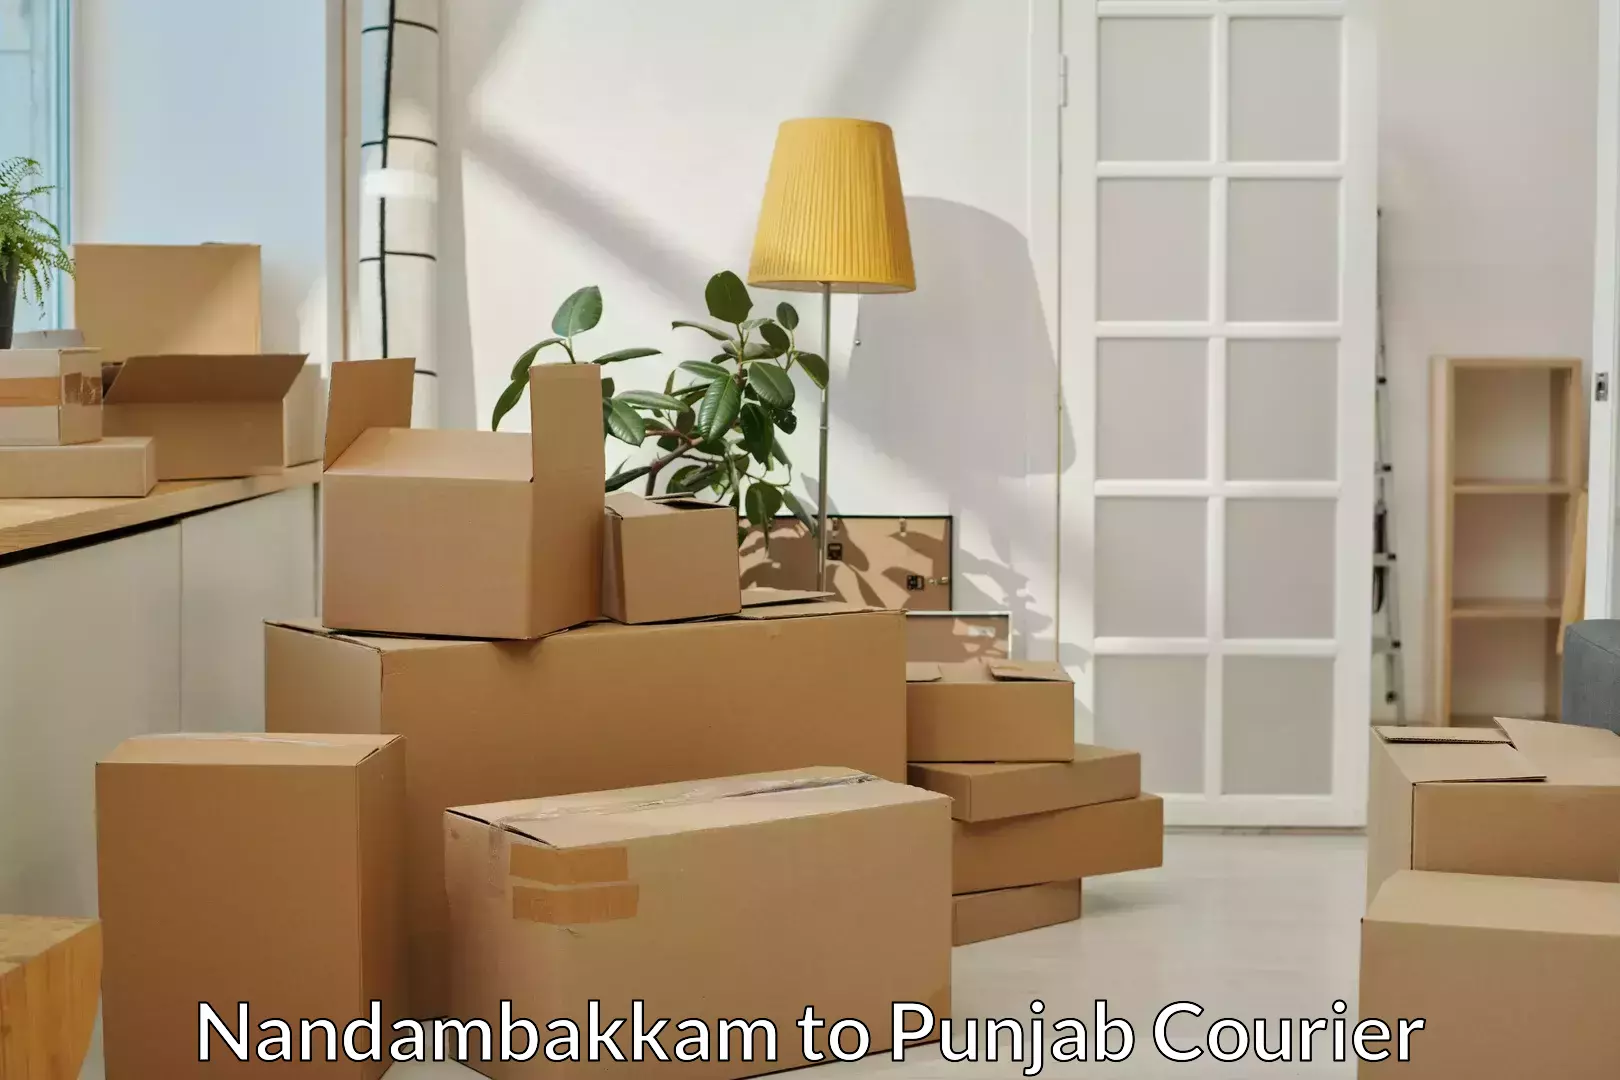 Skilled furniture movers in Nandambakkam to Punjab